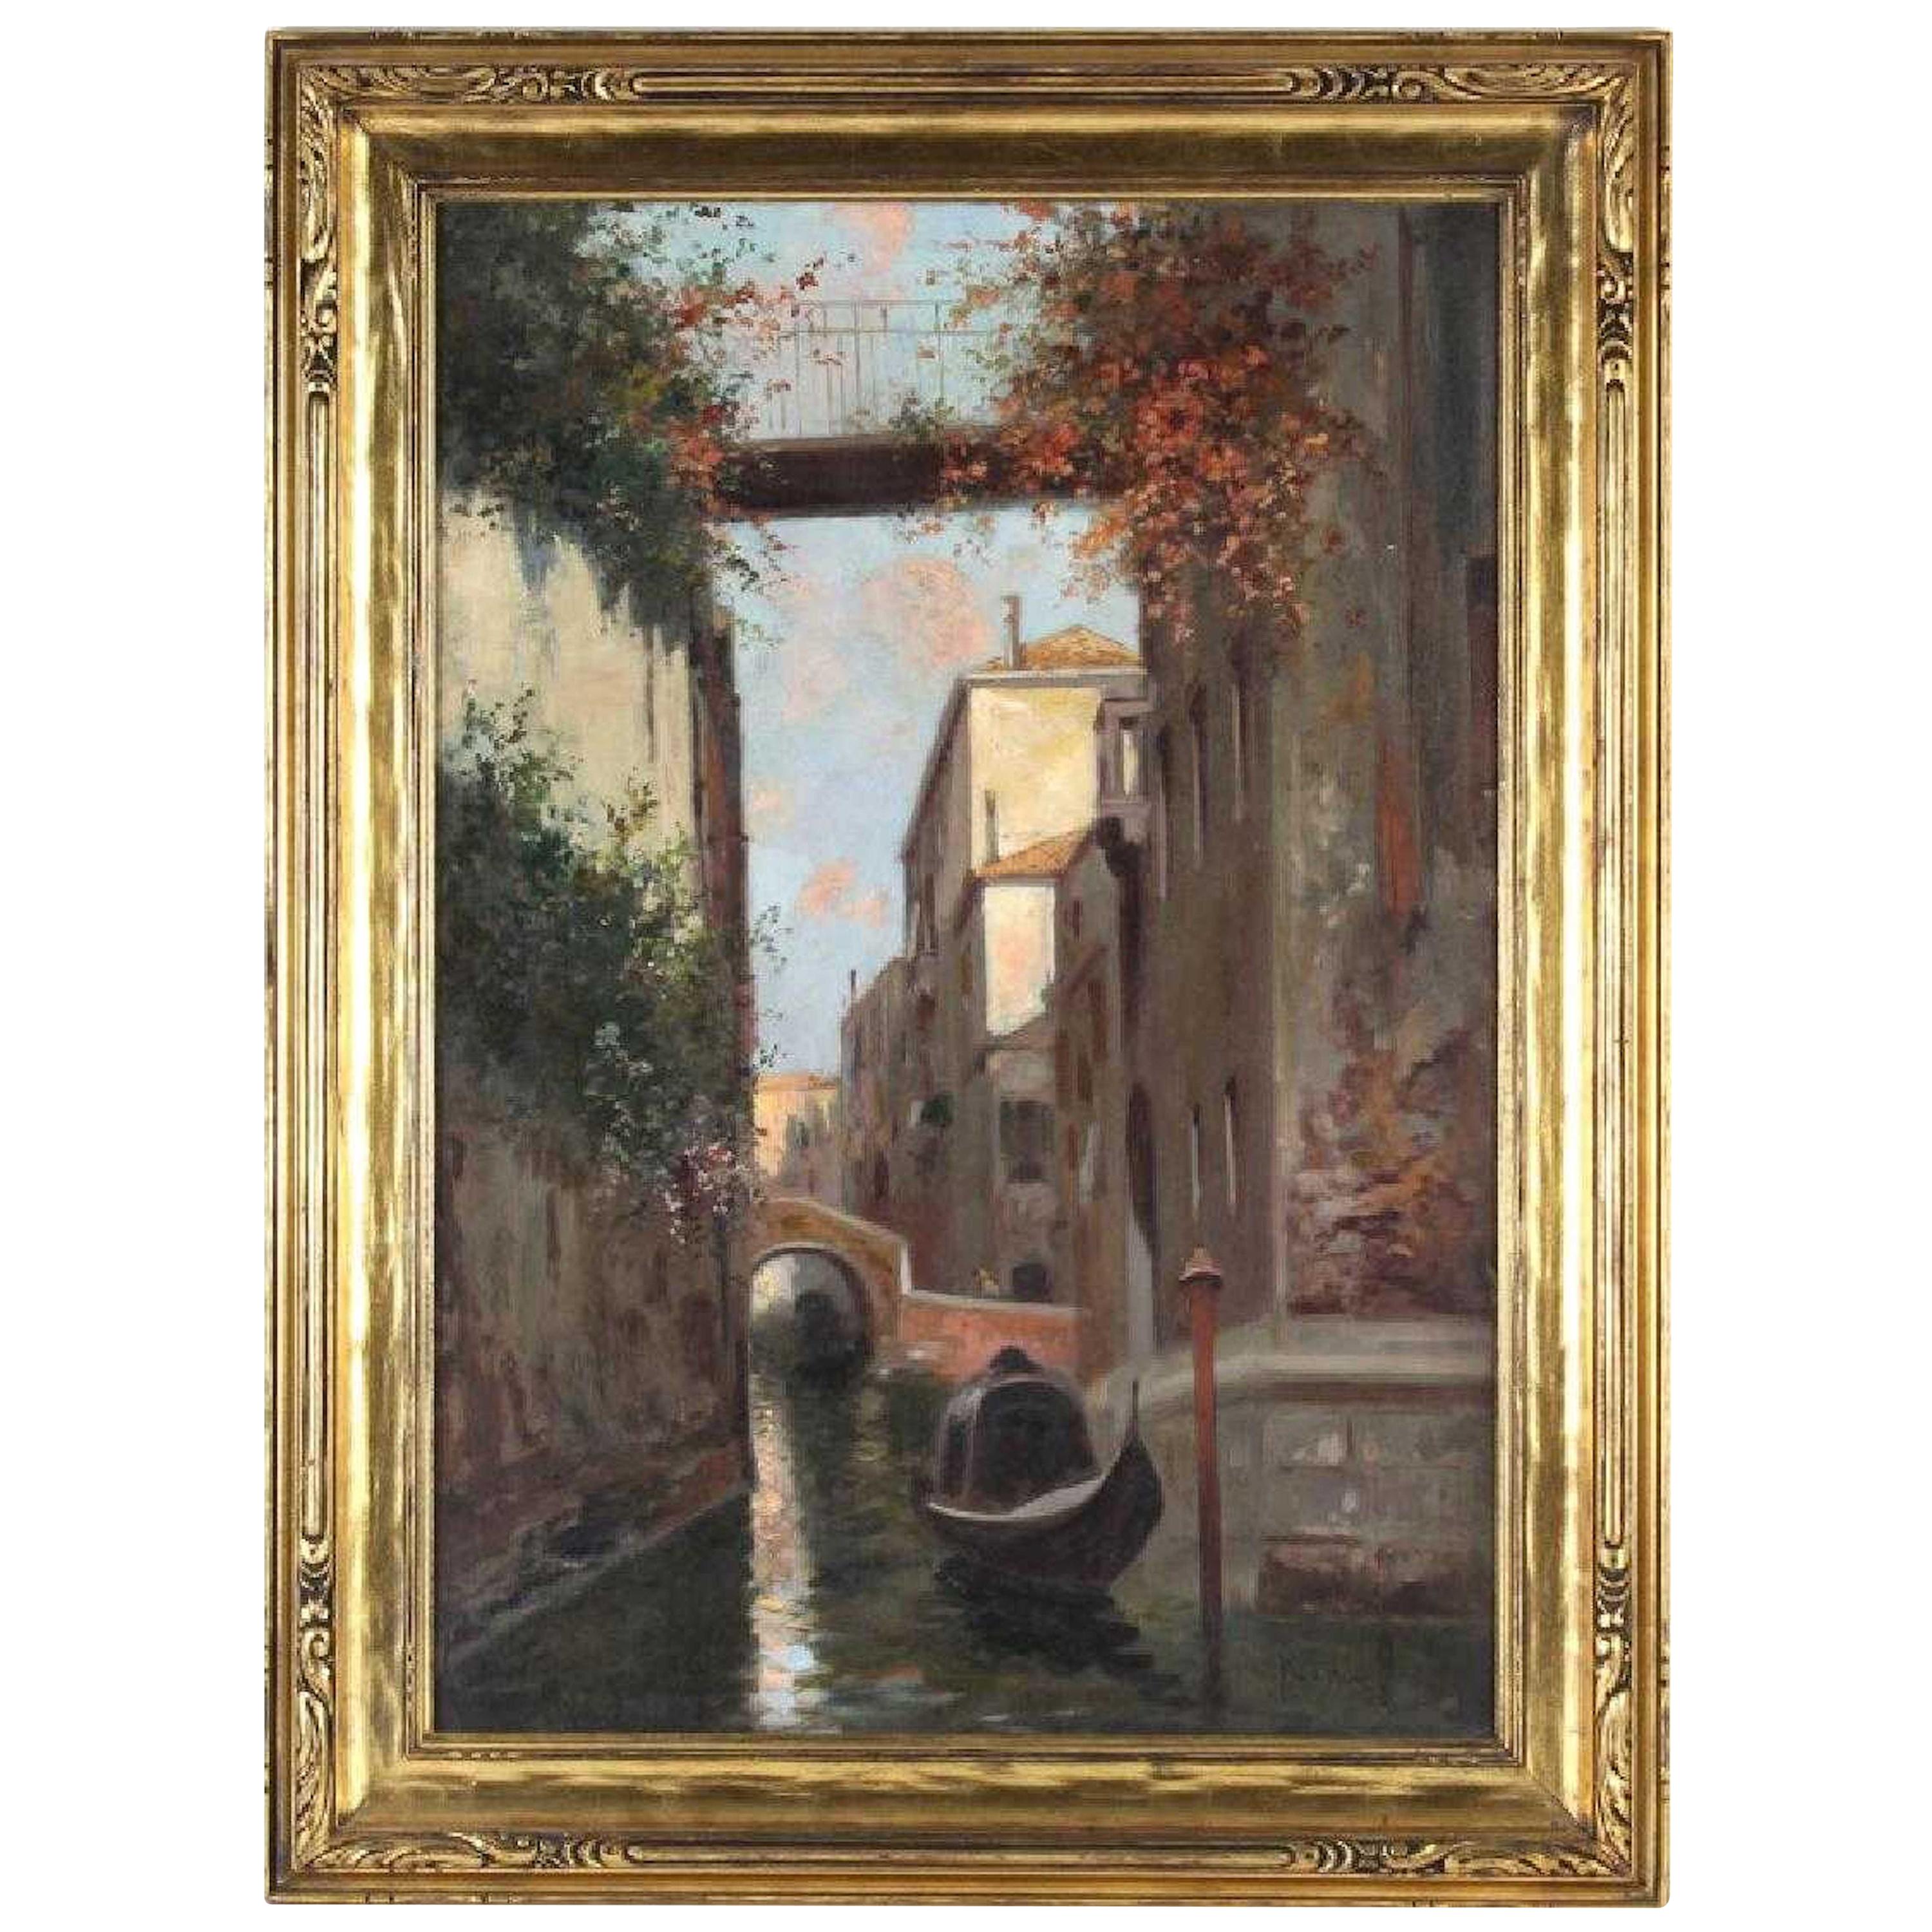 "A Canal in Venice" by Oscar Ricciardi